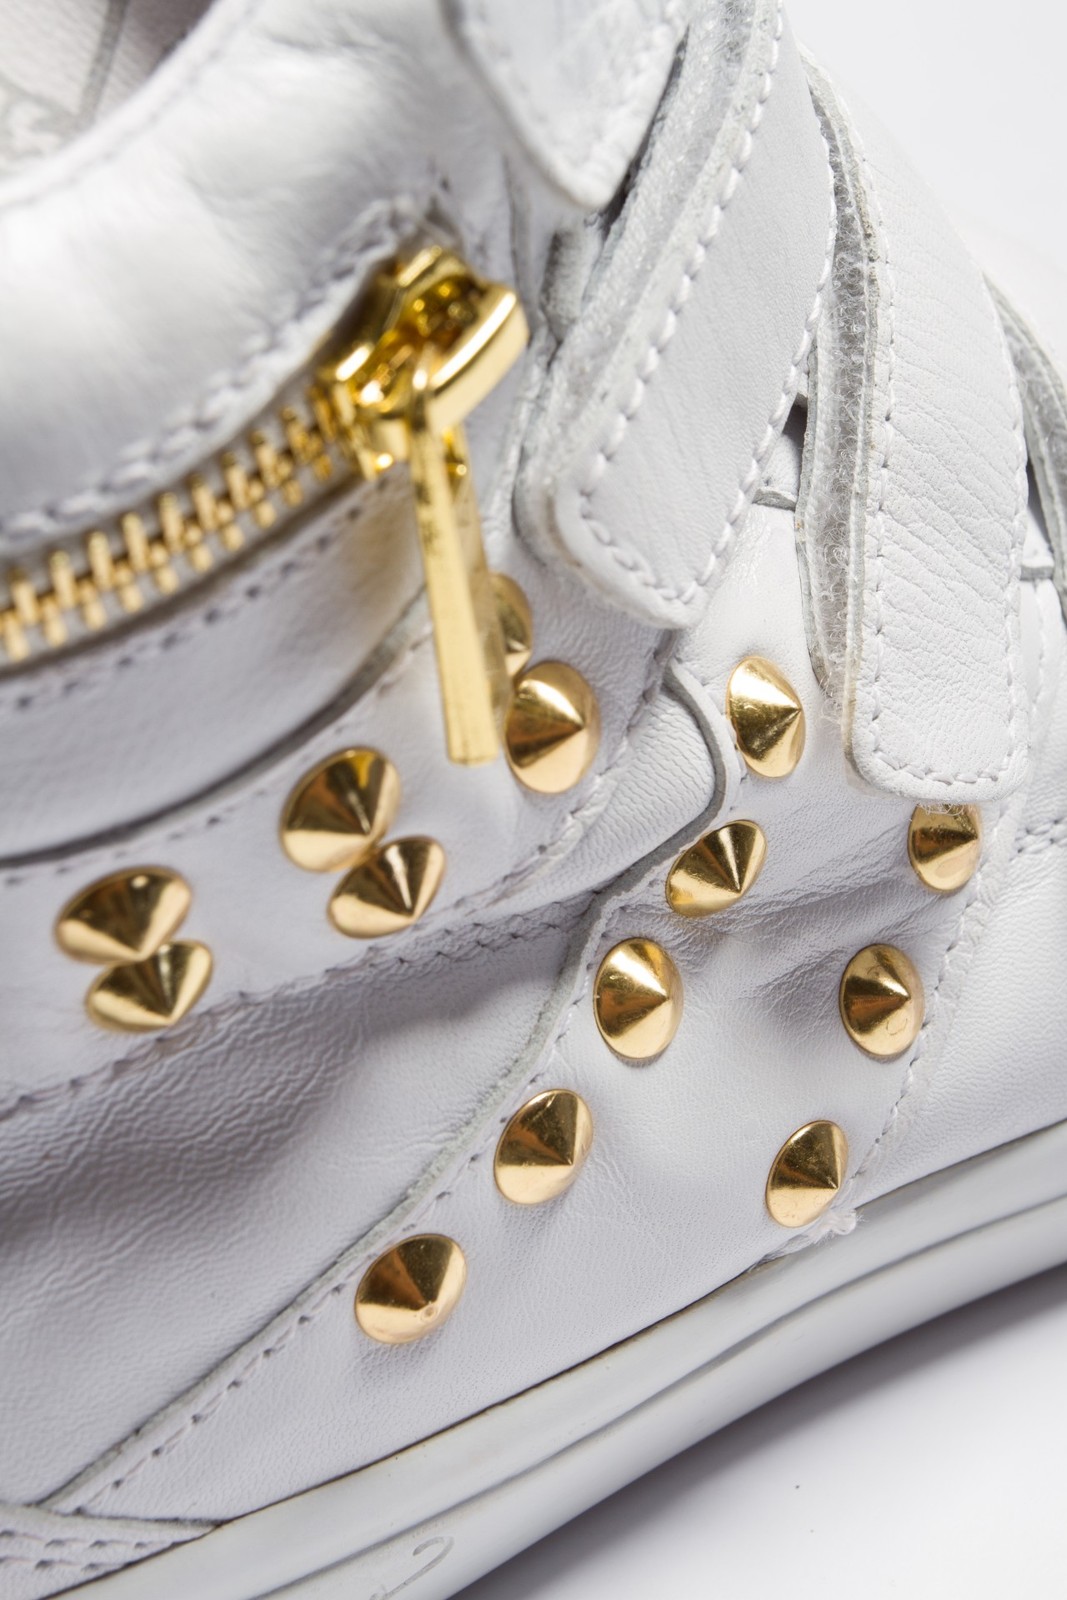 Replay fehér sneaker arany szegecsekkel 2013.4.12 #39500 fotója